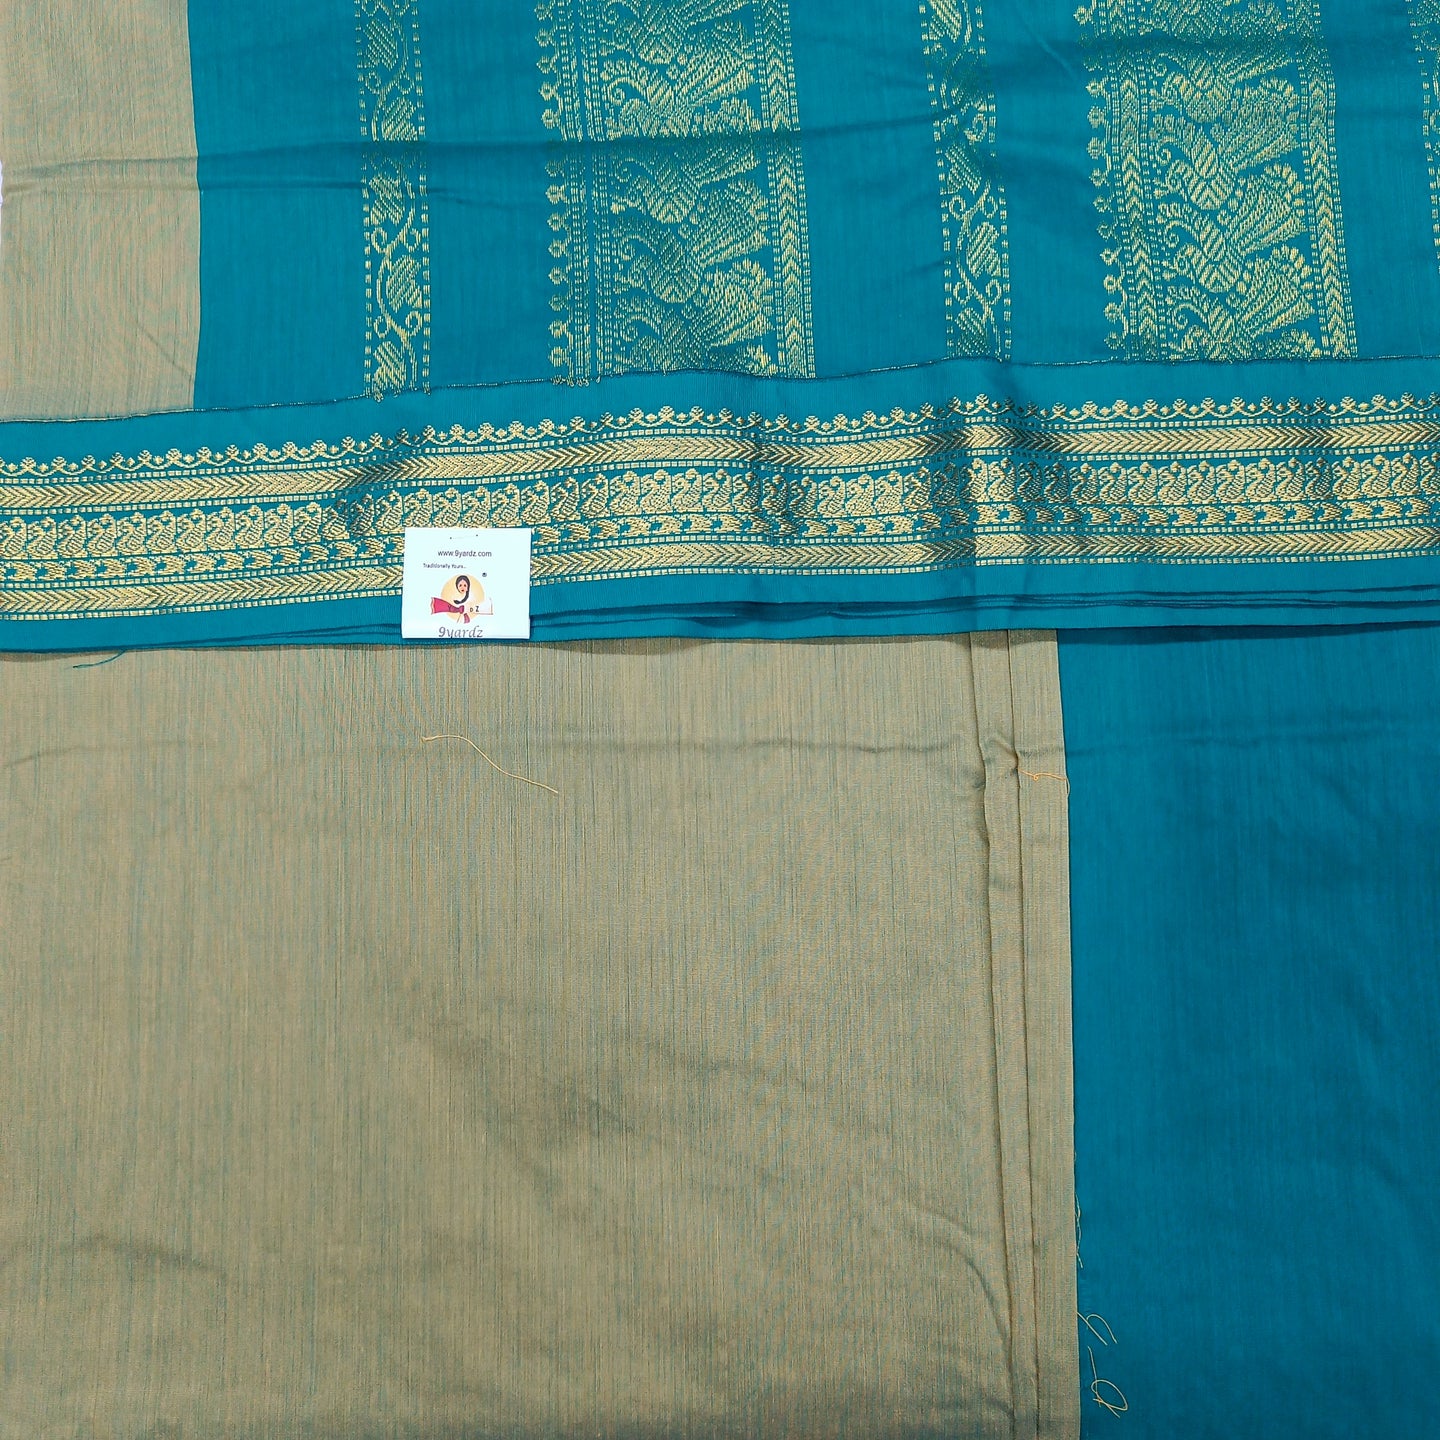 Kalyani Cotton 9.5yards